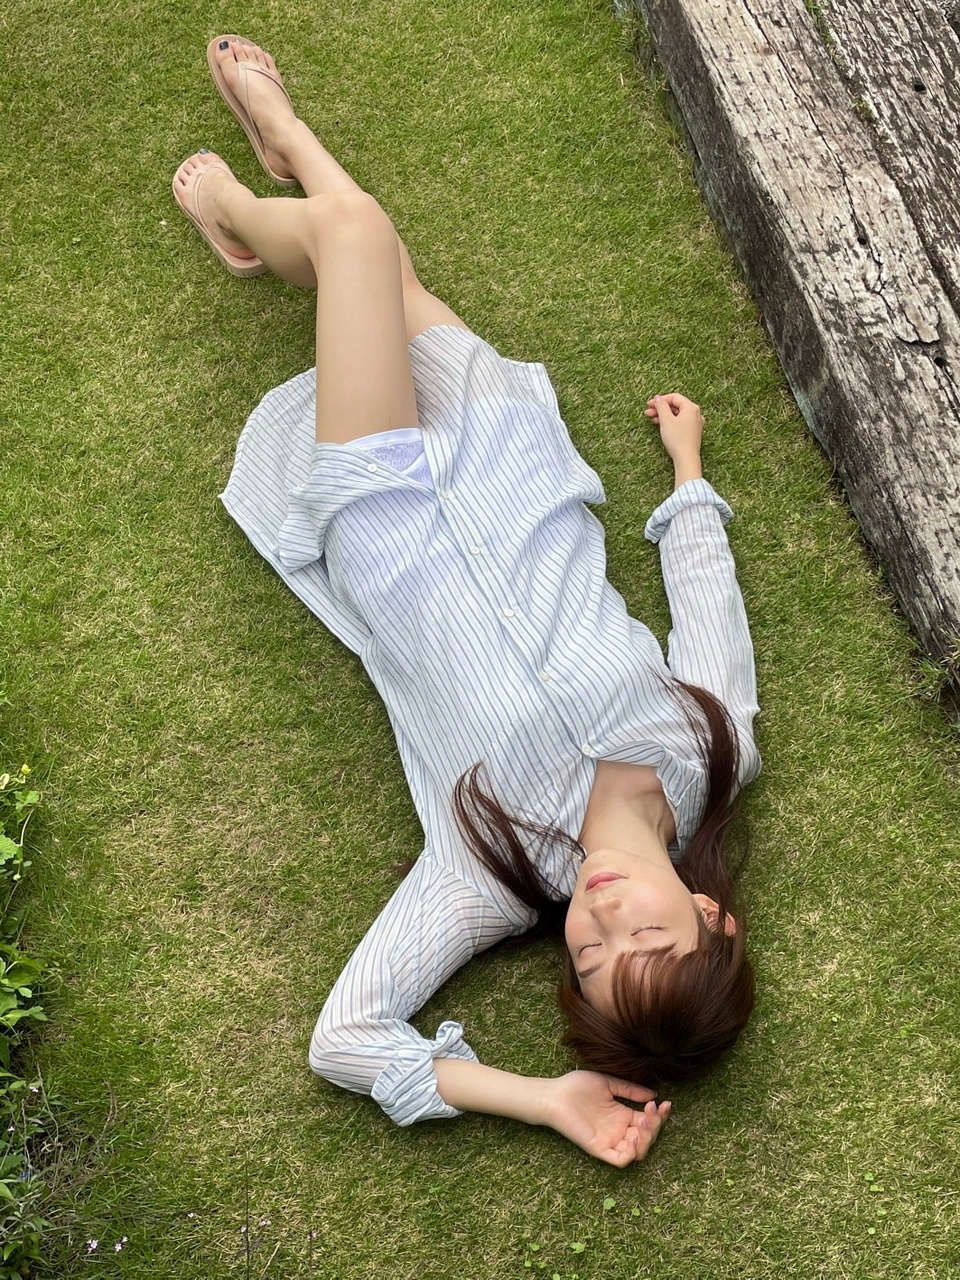 Nagisa Aoyama Feet